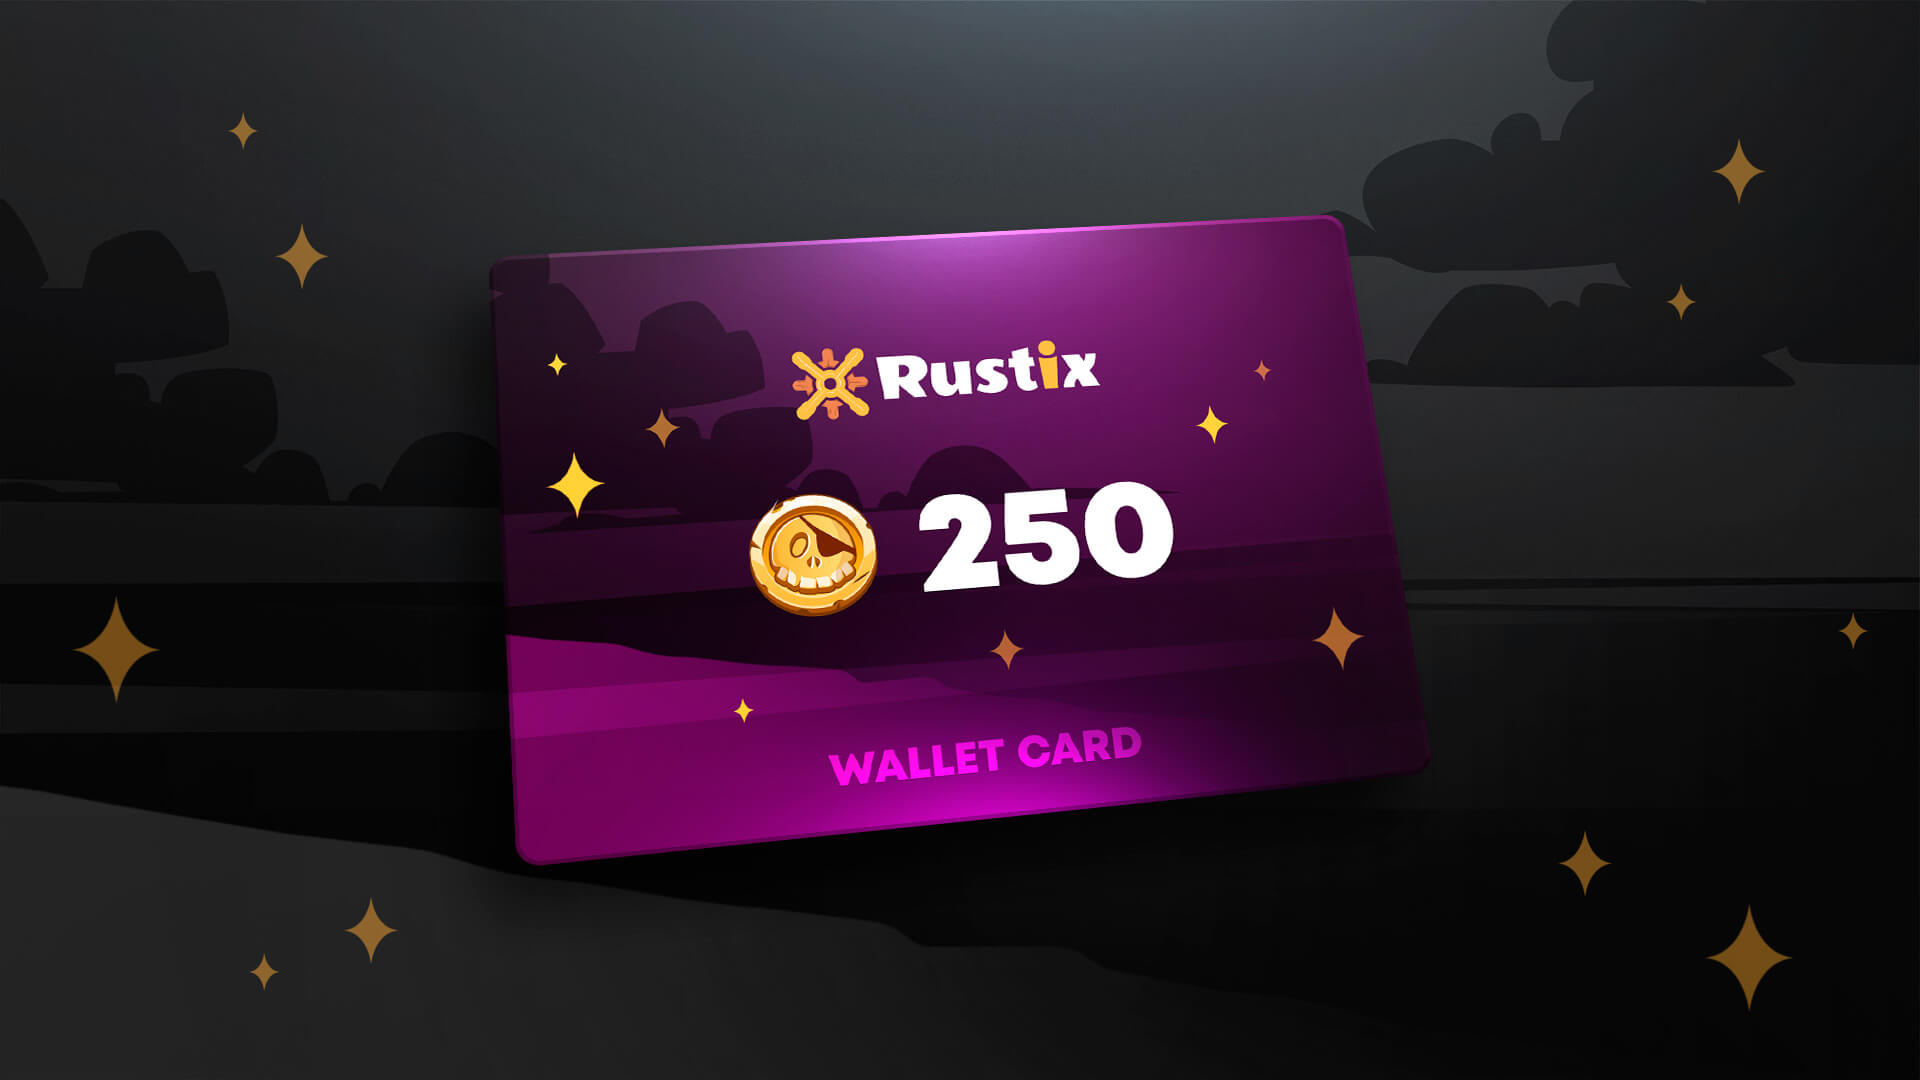 Rustix.io 250 USD Wallet Card Code 274.57 $